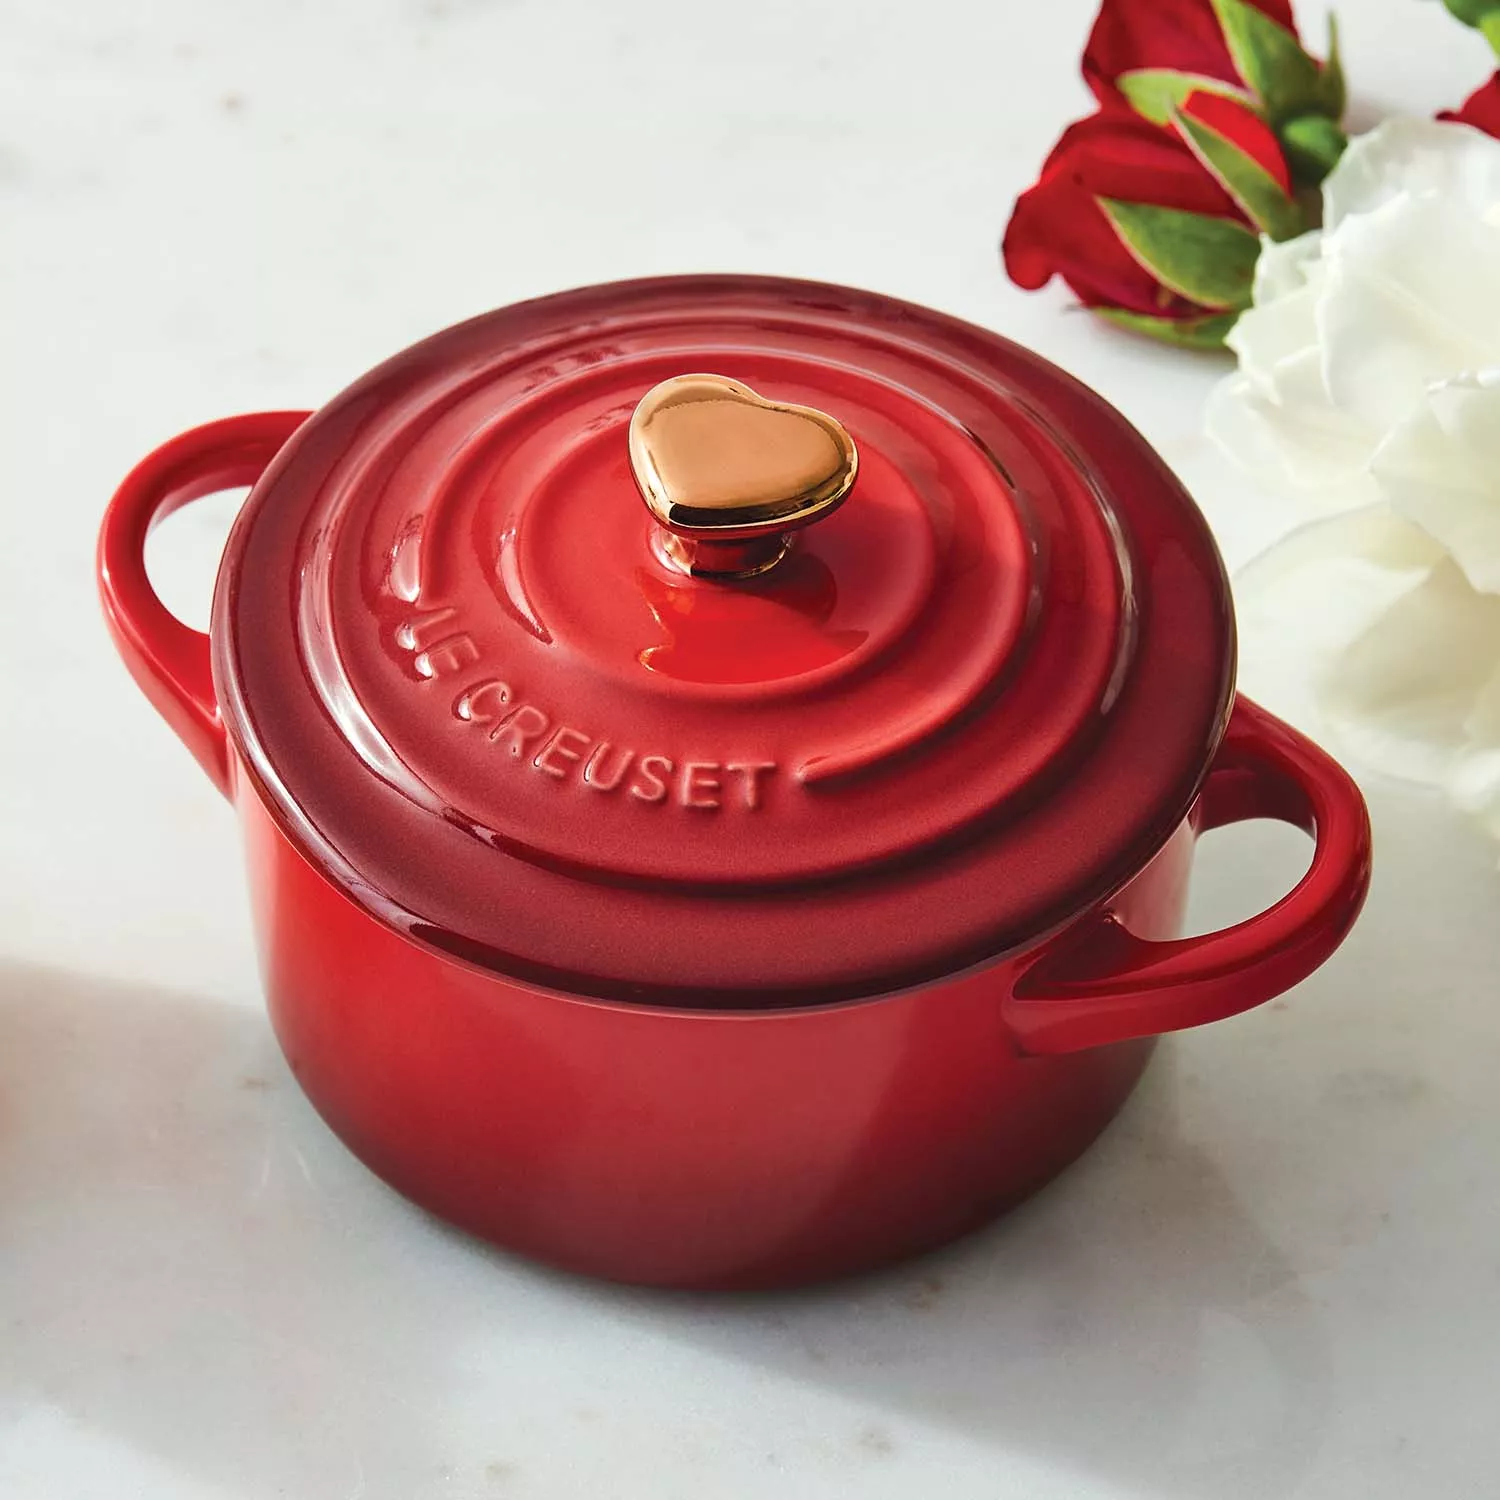 Le Creuset Red Mini Cocotte Dutch Oven 3.5” Dish Bowl